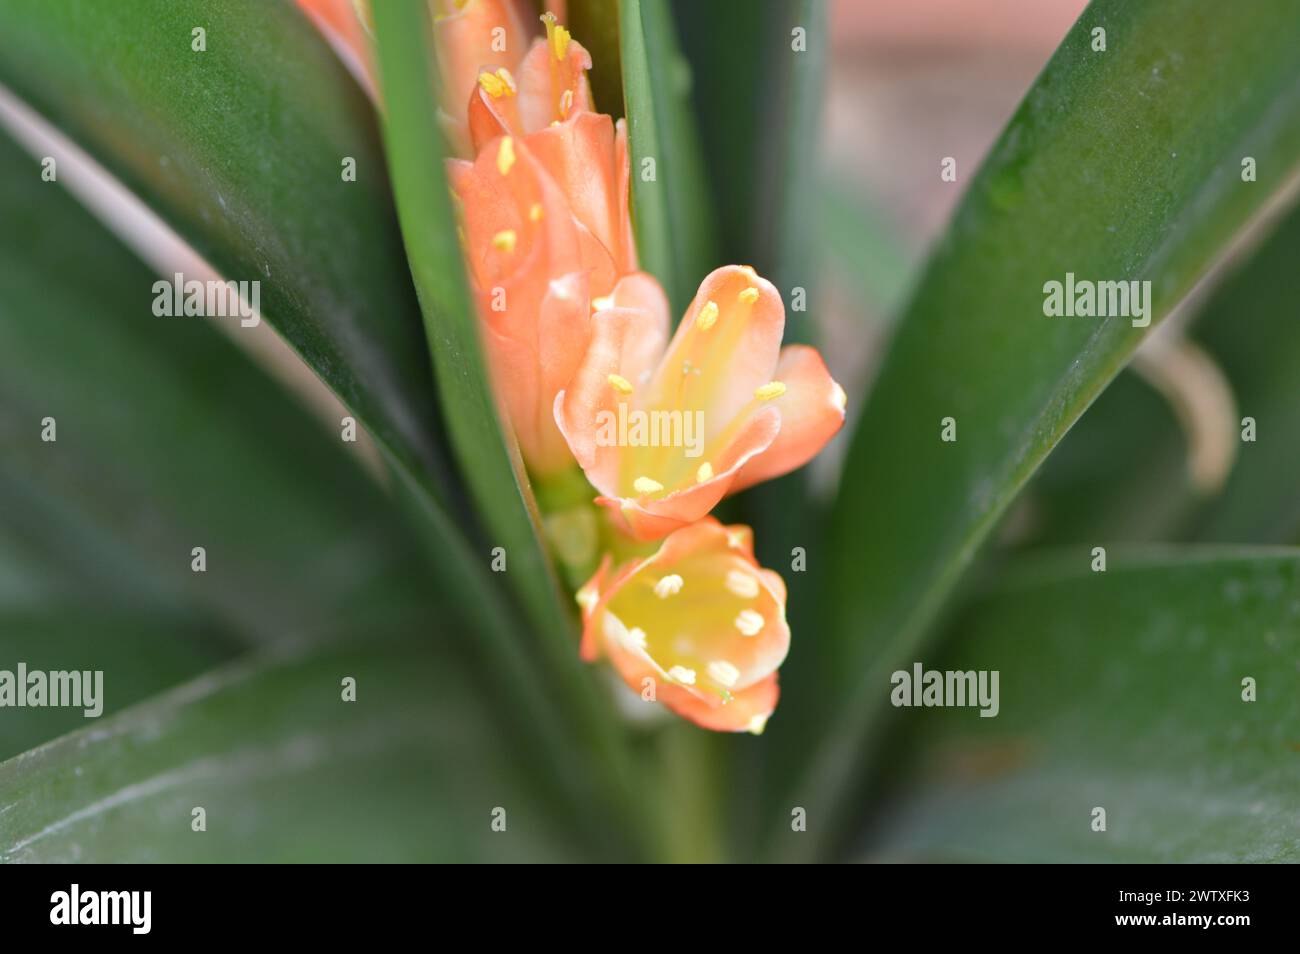 Fotografia macro de una flor naranja Stock Photo